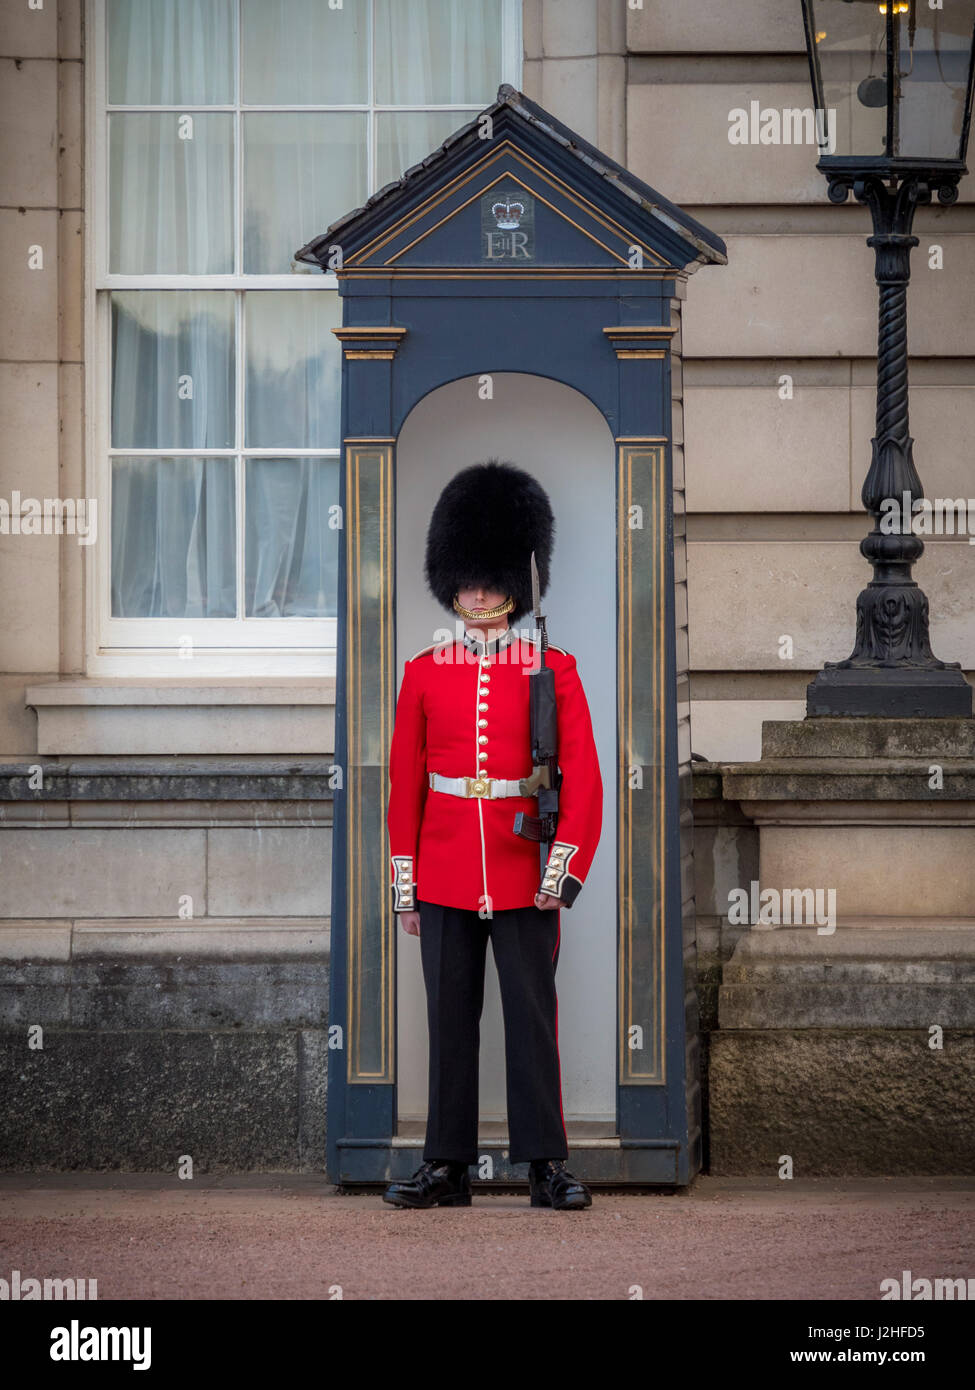 De Sentry les Grenadier Guards posté à l'extérieur de Buckingham Palace, London, UK. Banque D'Images